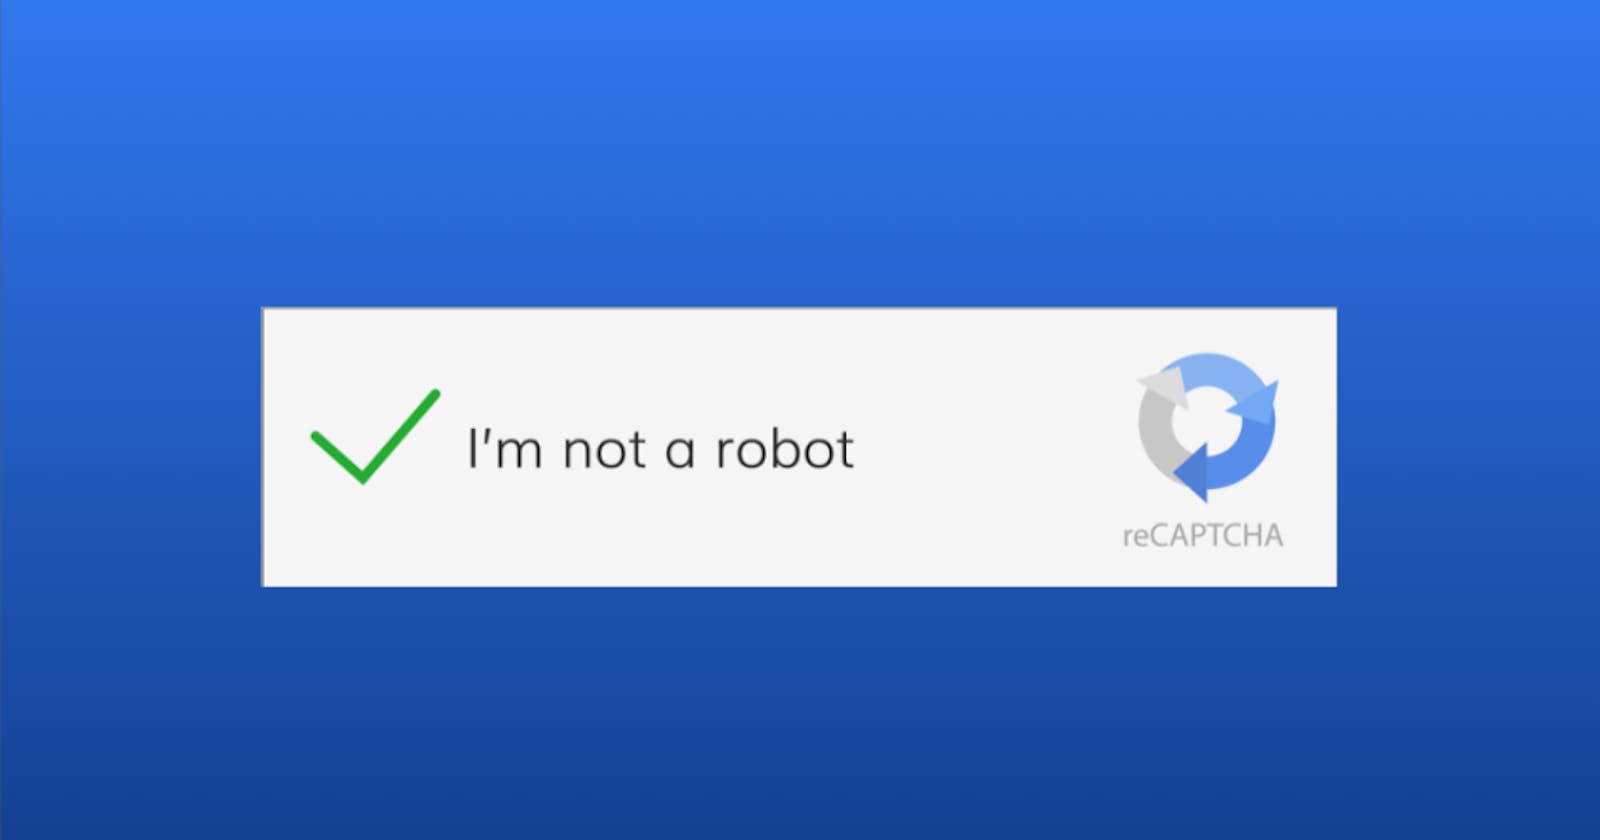 “I’m not a robot”🤖